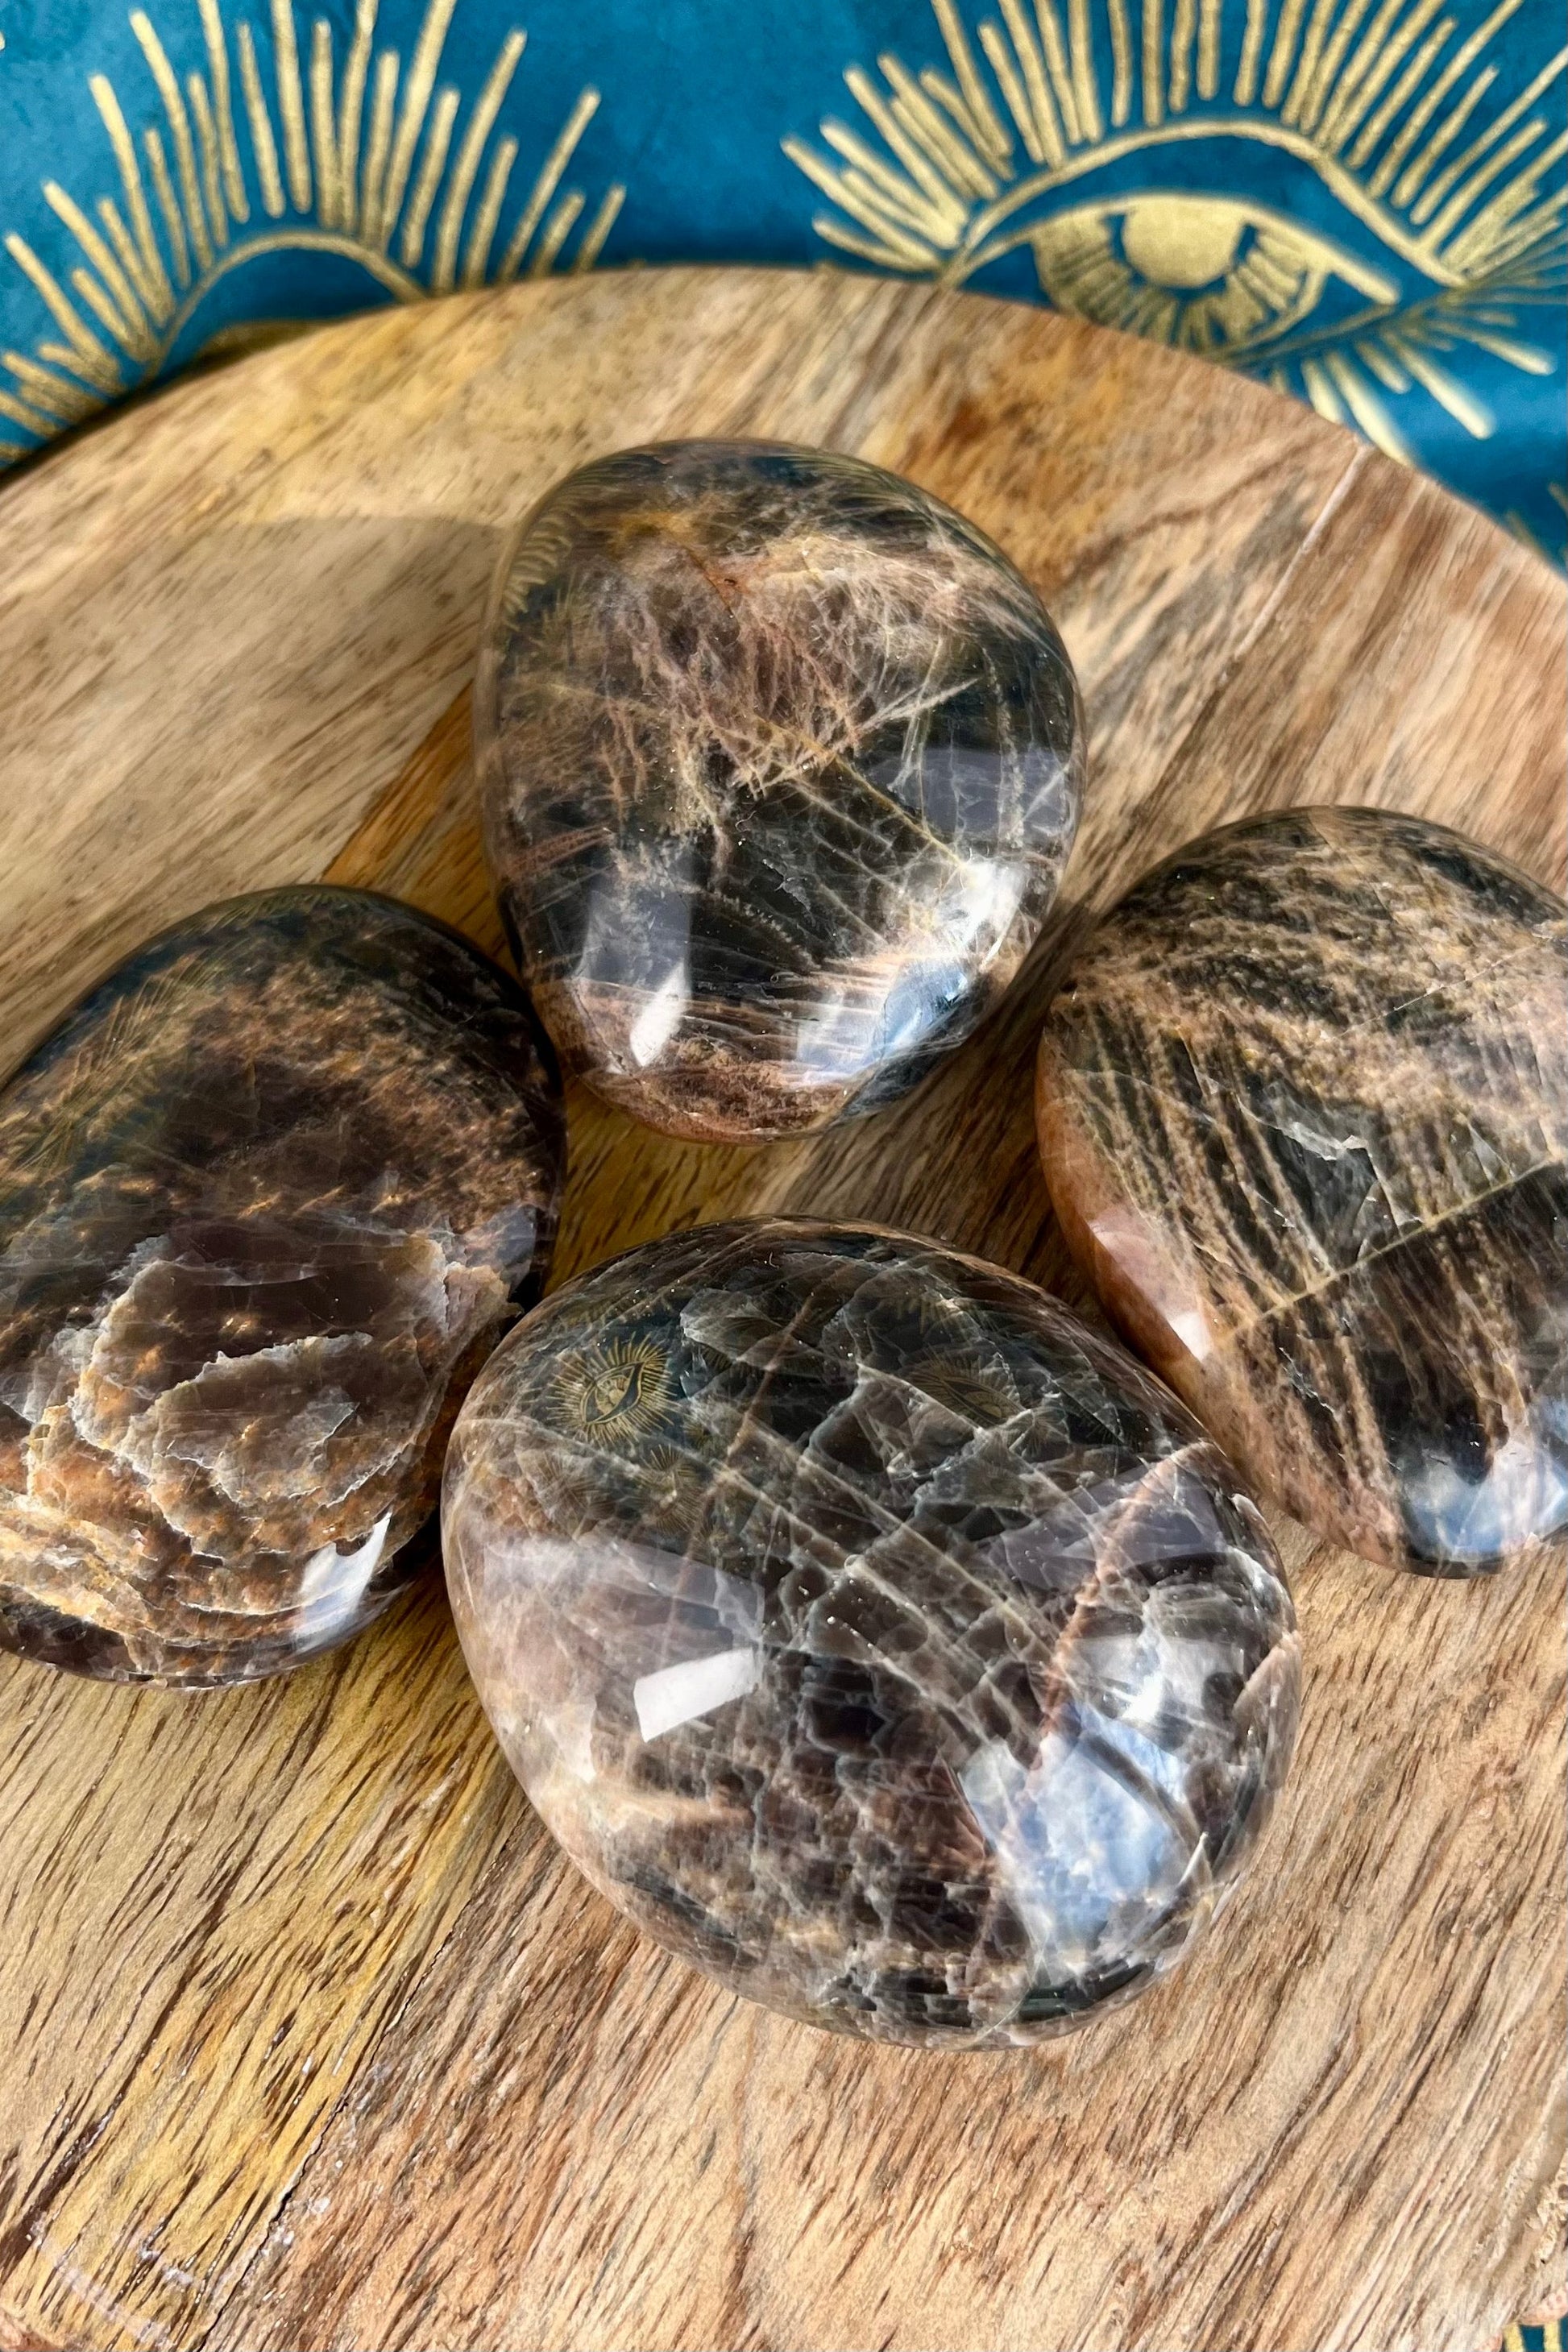 Black Moonstone / Garnierite / Palm Stones crystals from GemCadet